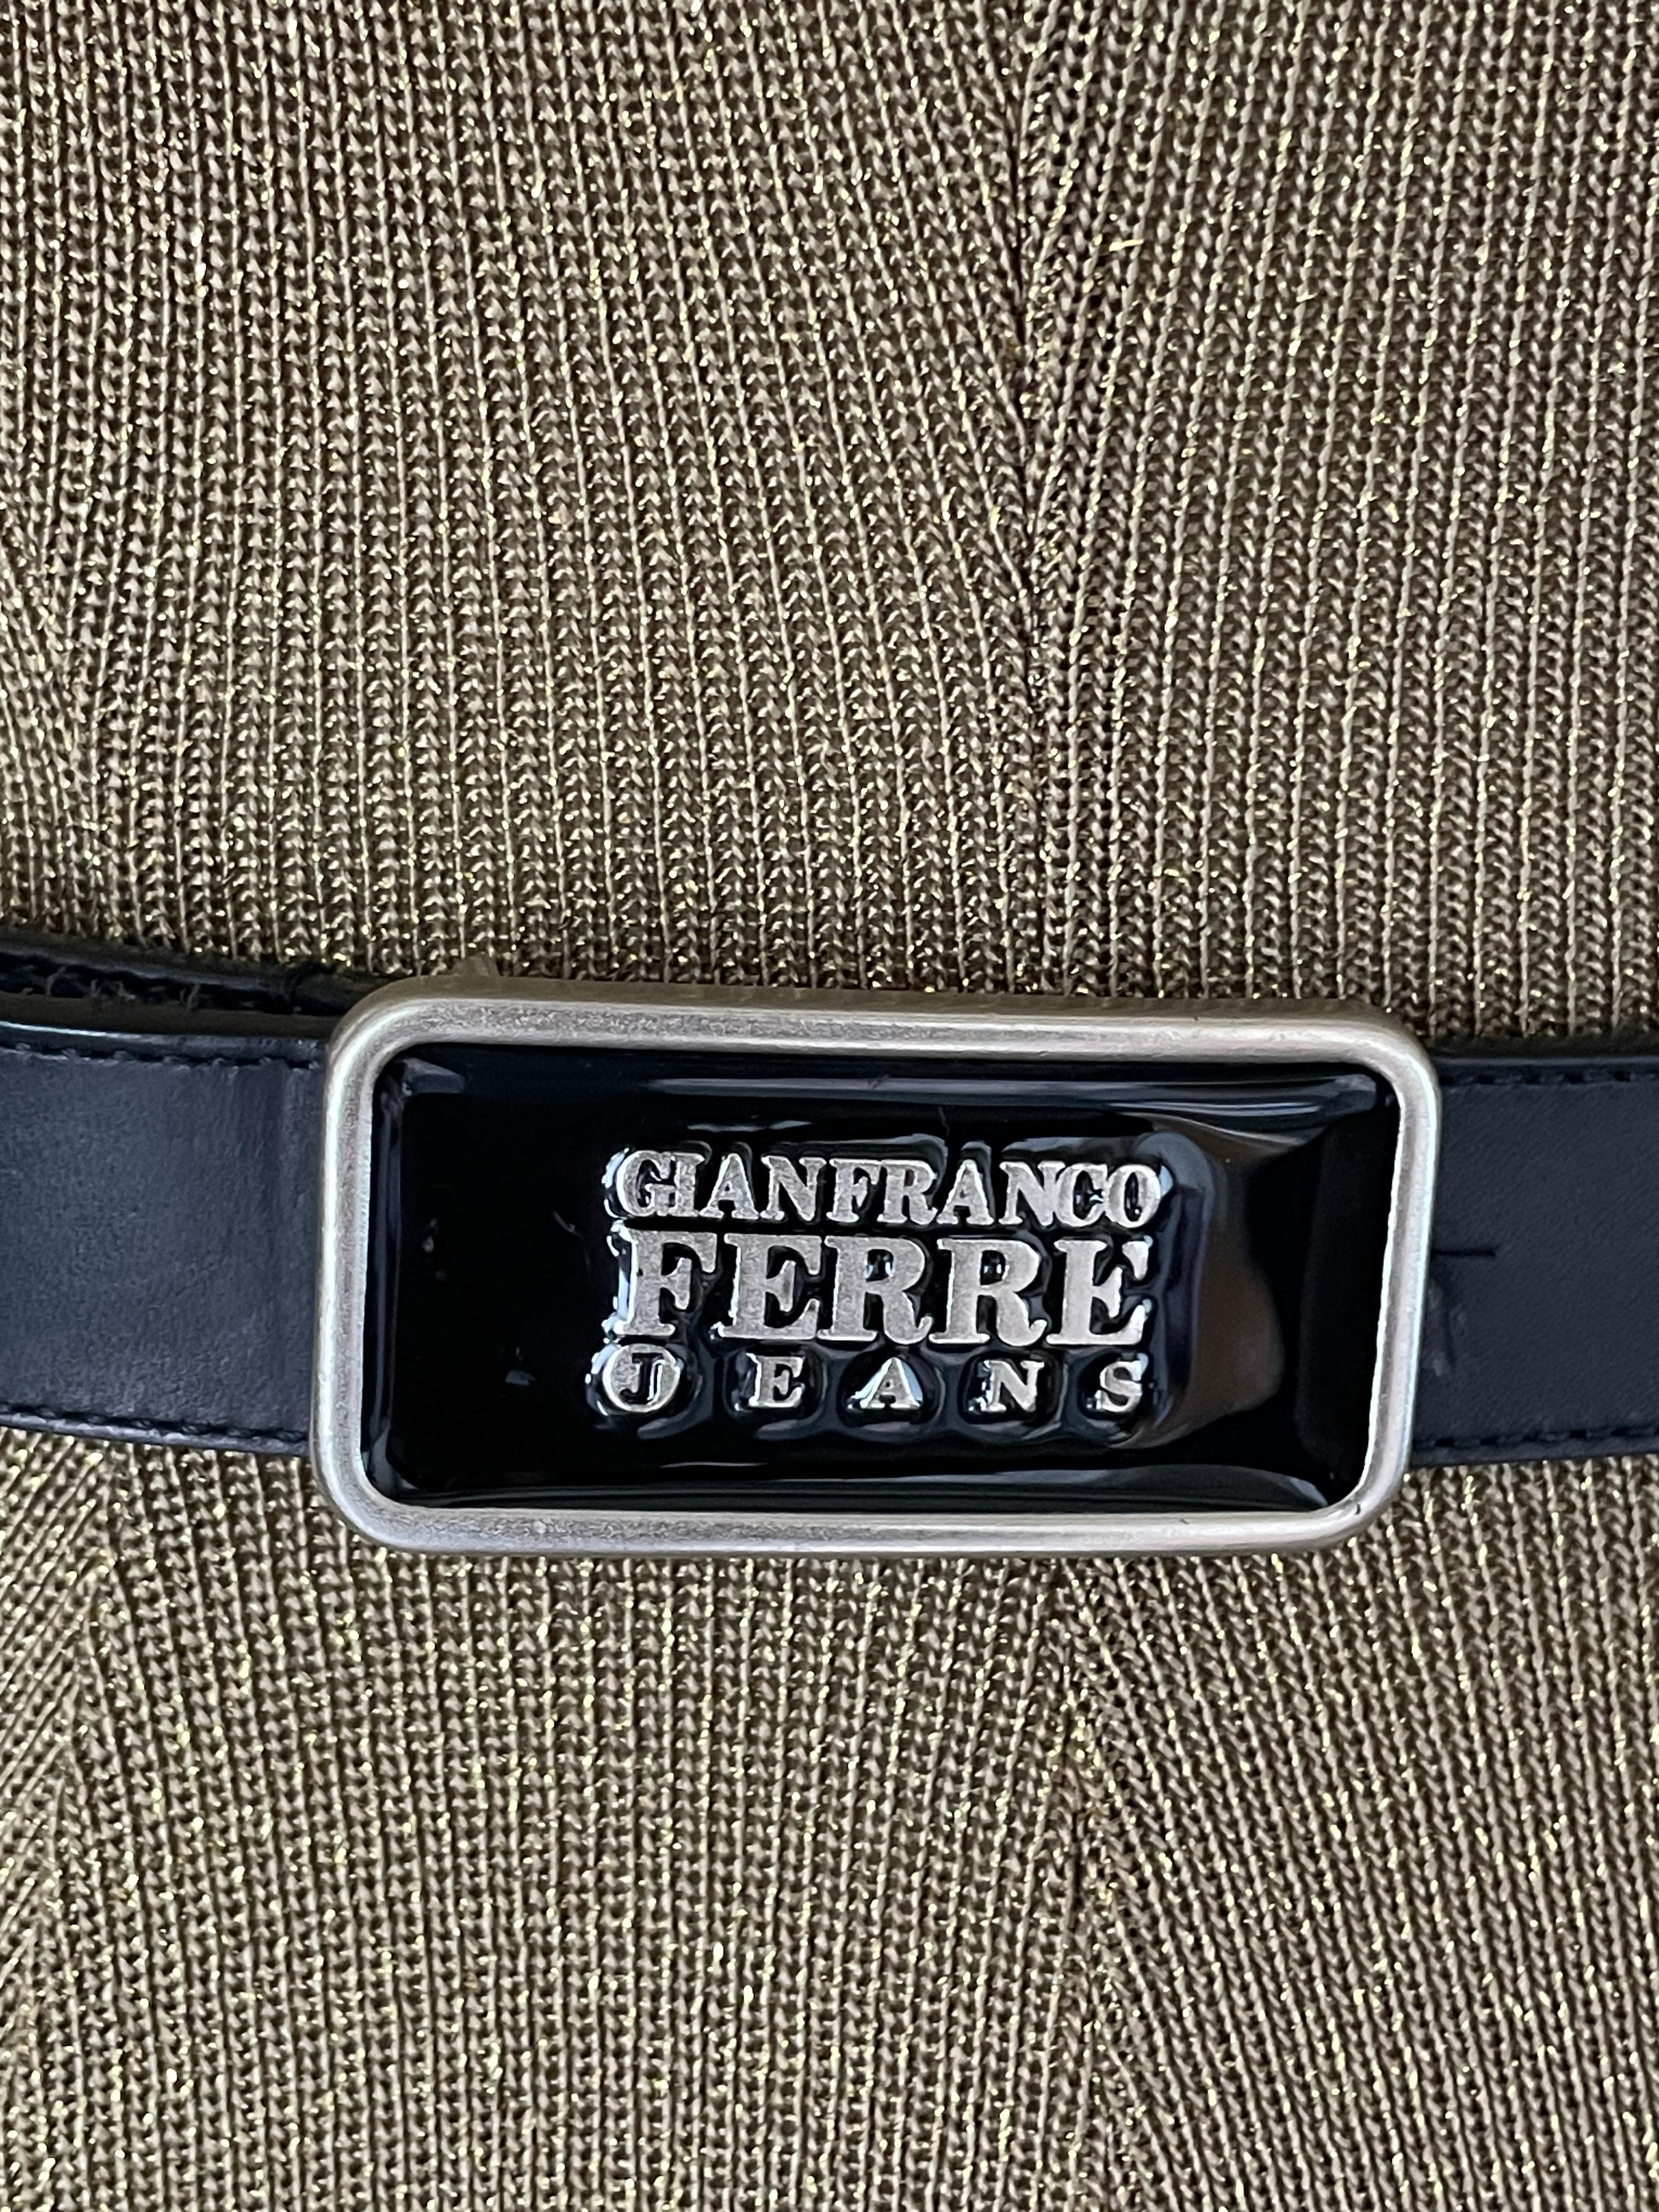 Rare ceinture Gianfranco Ferre.

Gianfranco Ferré était un créateur de mode italien connu pour ses créations élégantes et sophistiquées. Il a souvent été surnommé 